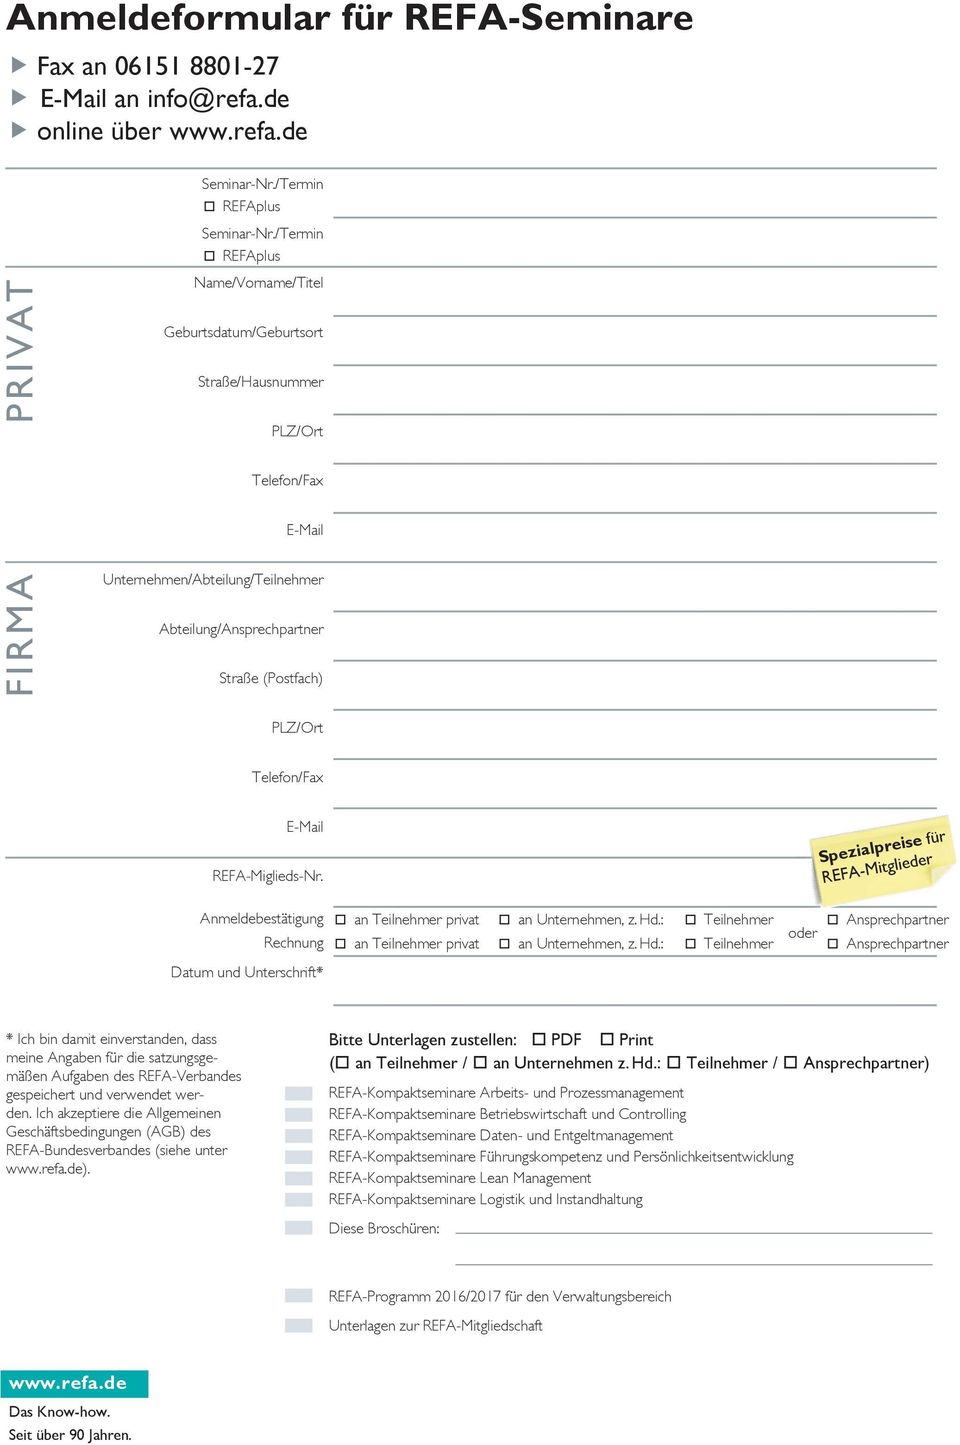 Telefon/Fax E-Mail REFA-Miglieds-Nr. Anmeldebestätigung Rechnung Datum und Unterschrift* Spezialpreise für REFA-Mitglieder an Teilnehmer privat an Unternehmen, z. Hd.